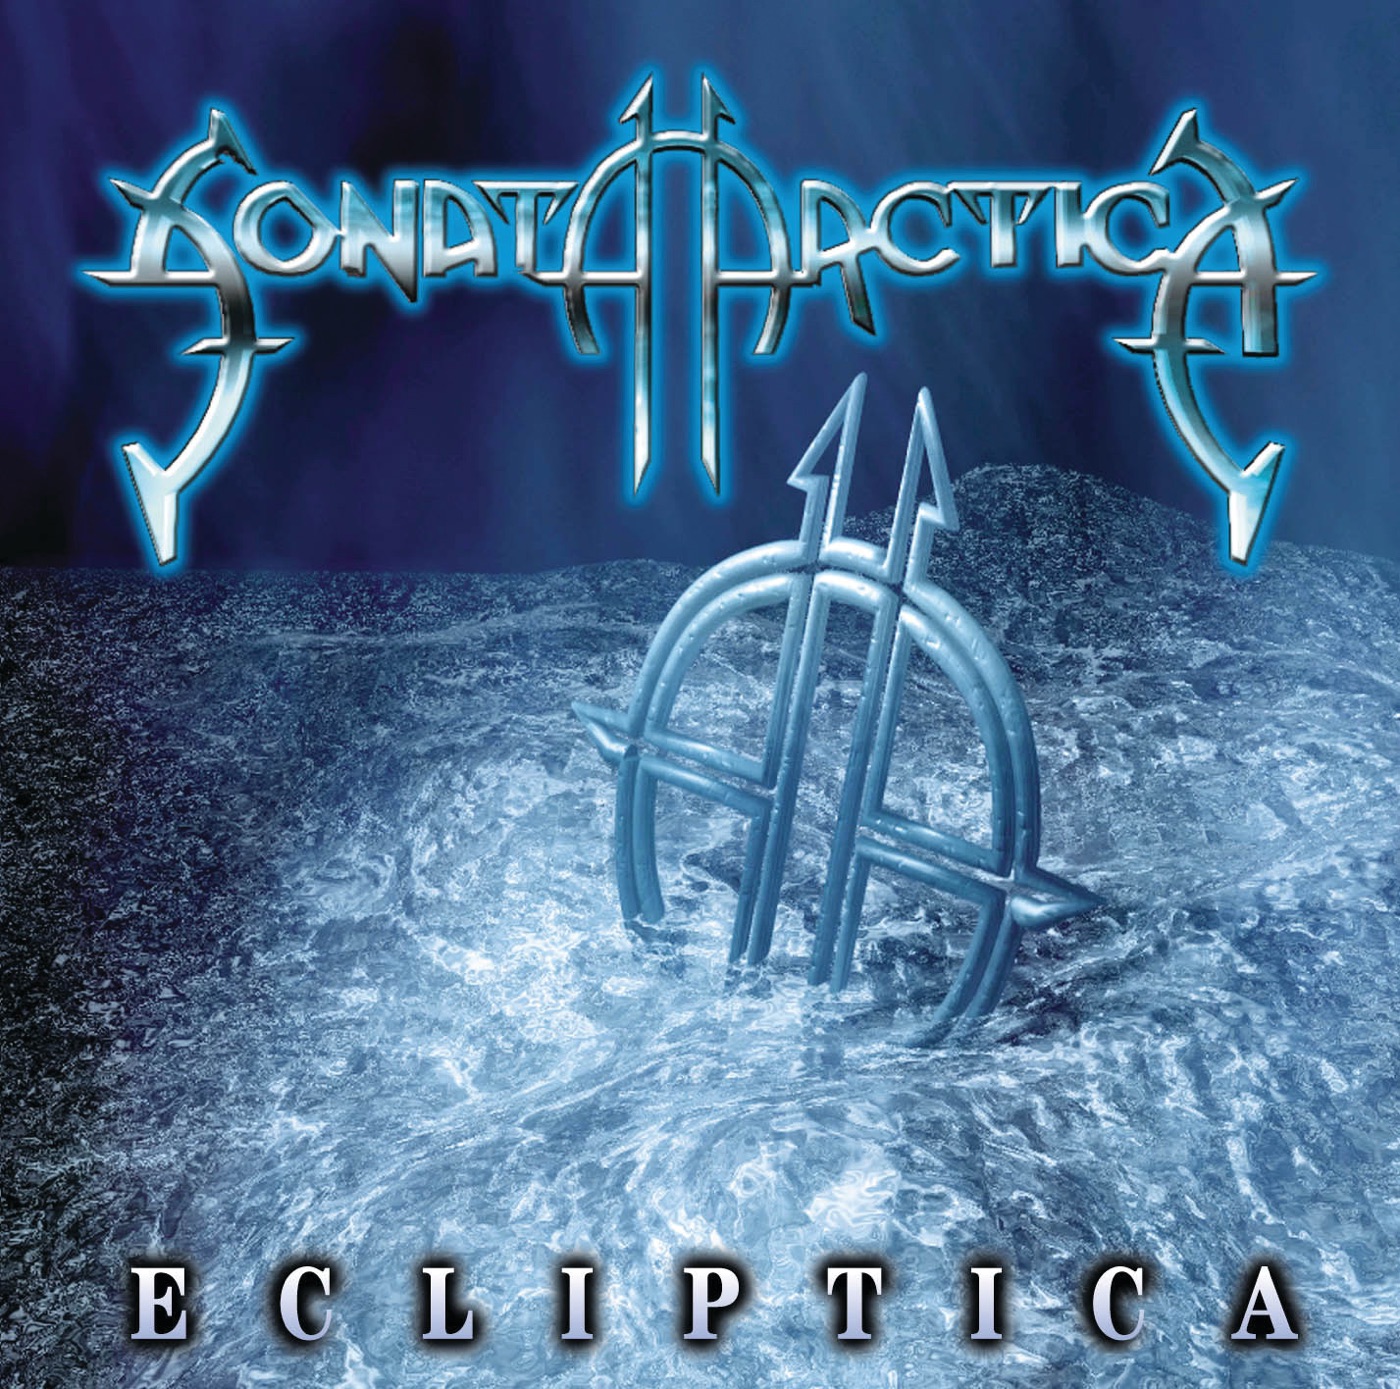 Ecliptica by Sonata Arctica